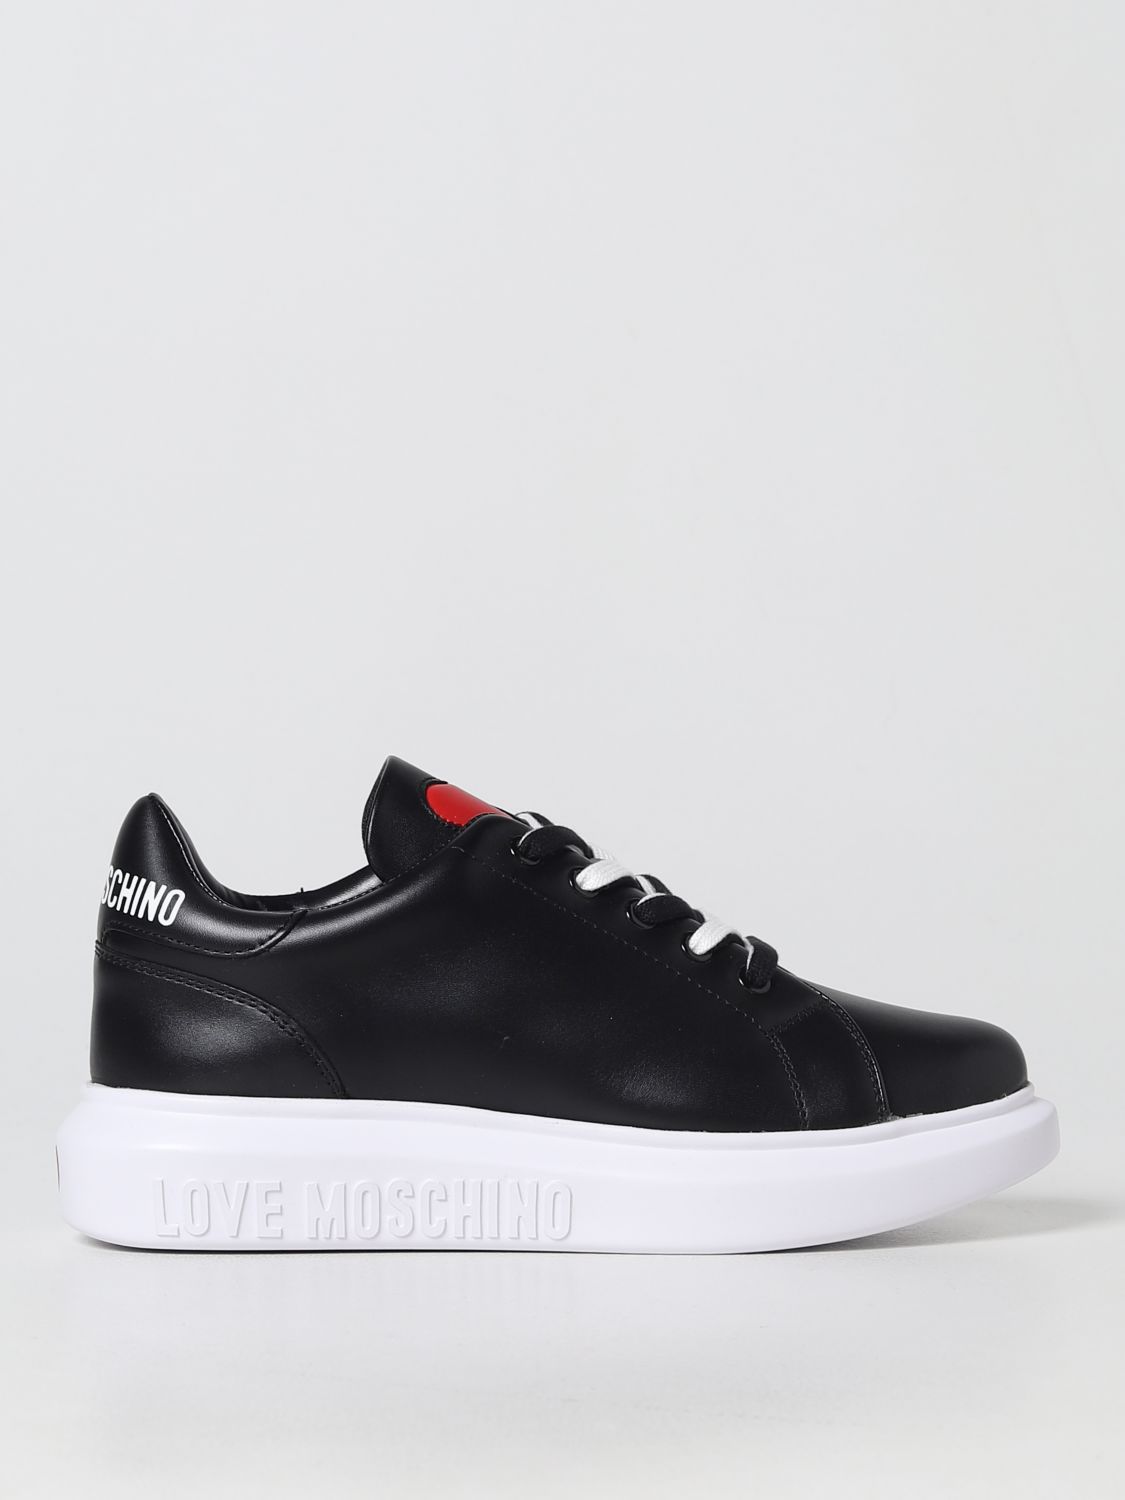 majoor ongeduldig ziel Love Moschino Outlet: sneakers for woman - Black | Love Moschino sneakers  JA15044G1FIA online on GIGLIO.COM